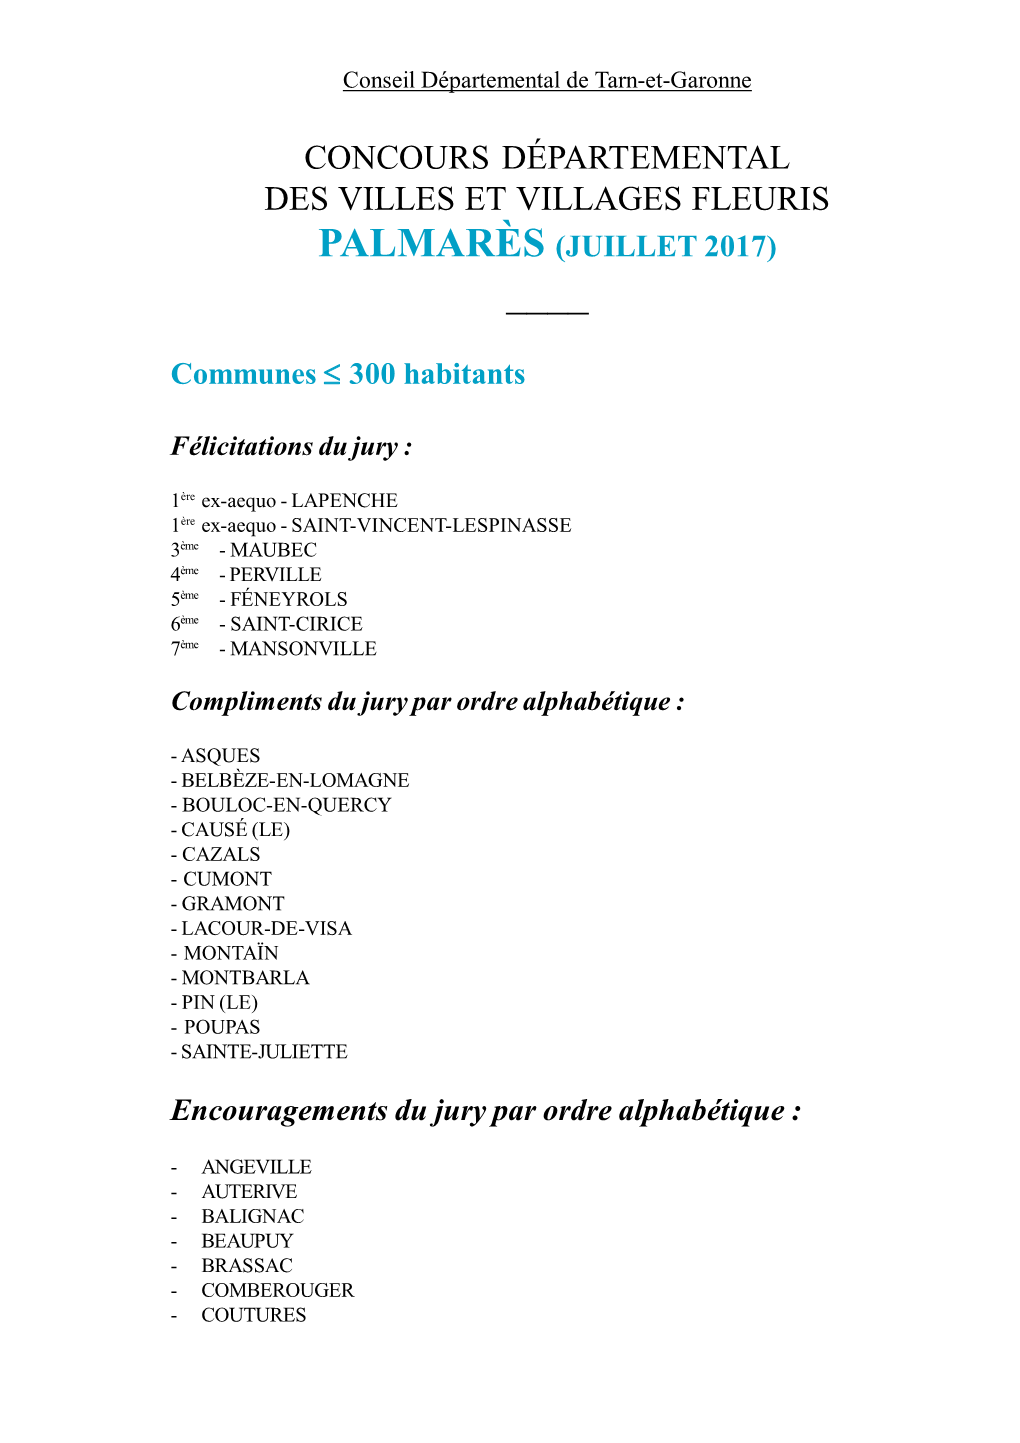 Concours Départemental Des Villes Et Villages Fleuris Palmarès (Juillet 2017) ____